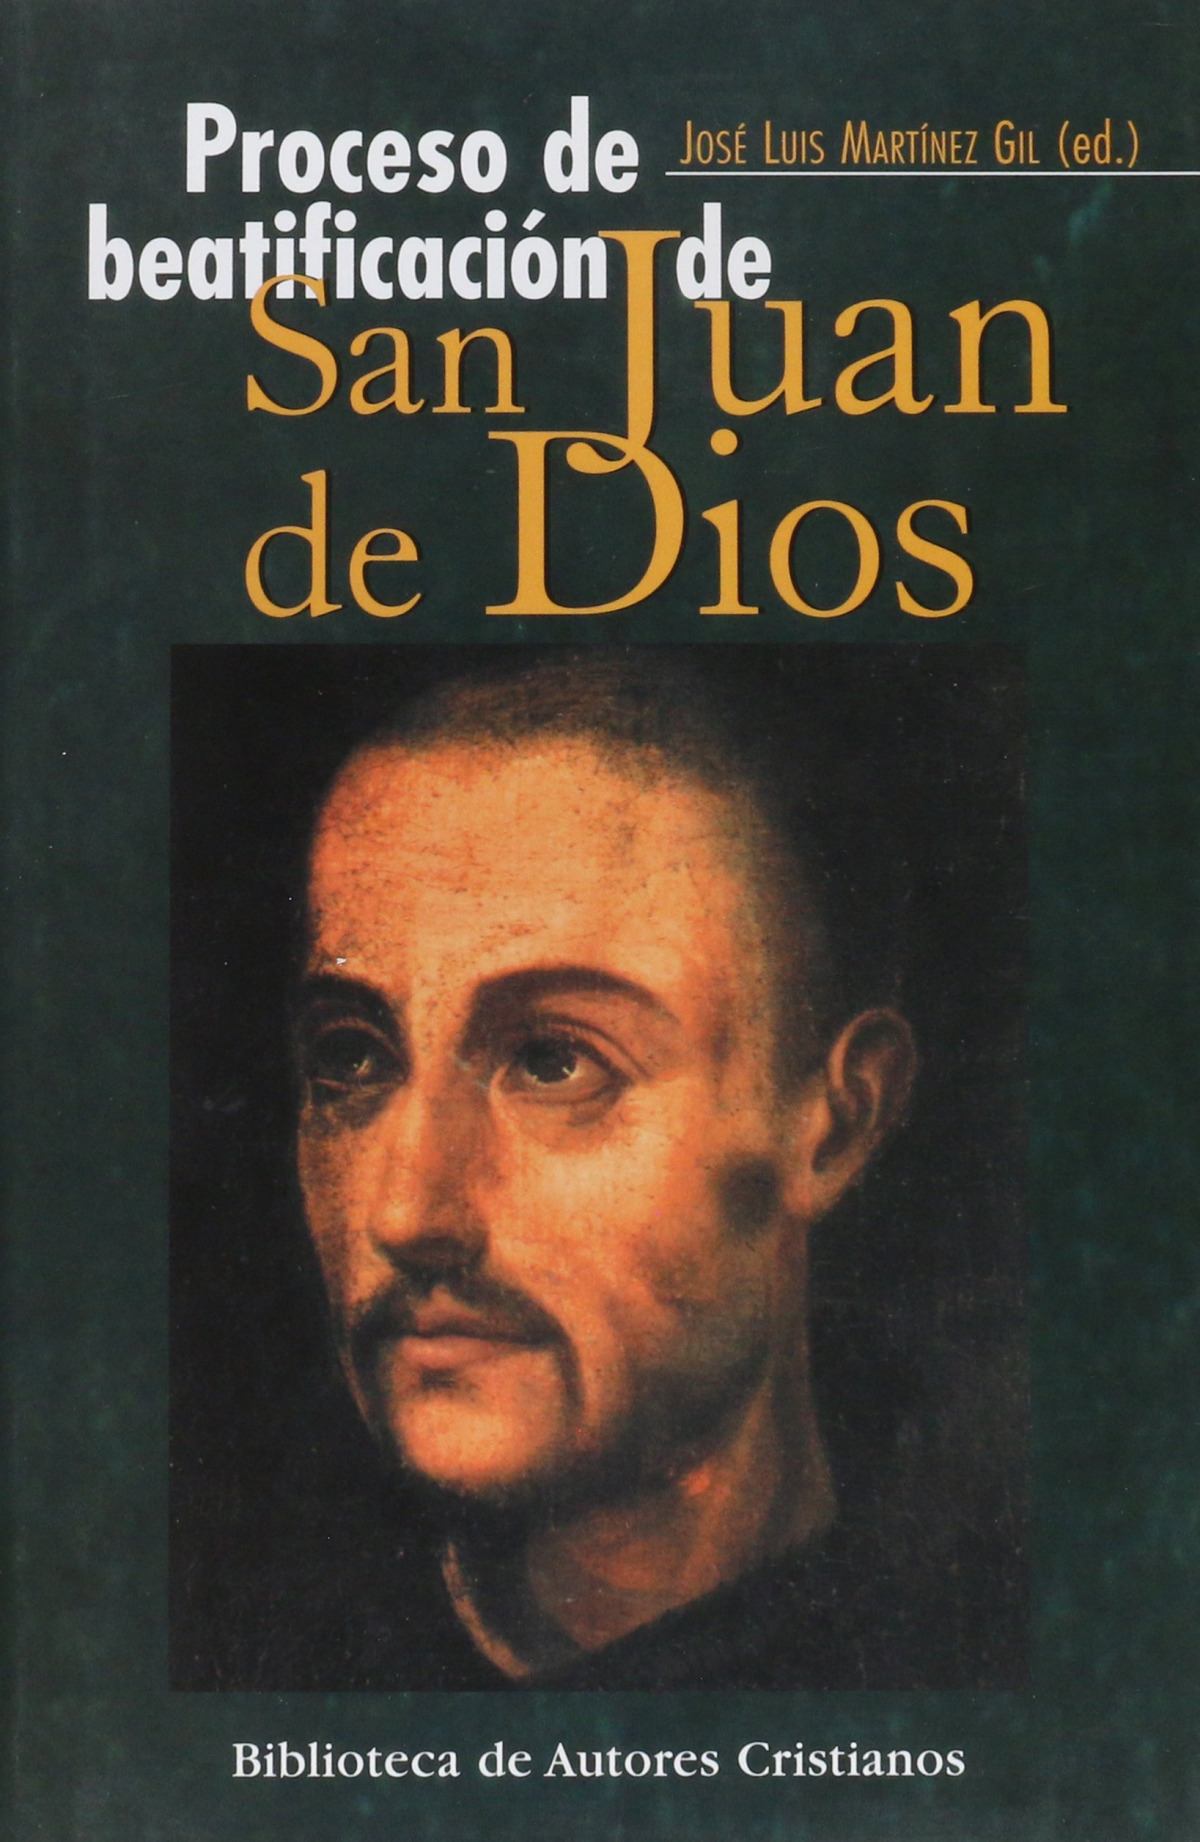 Proceso de beatificación san juan de dios - Martínez Gil, José Luis